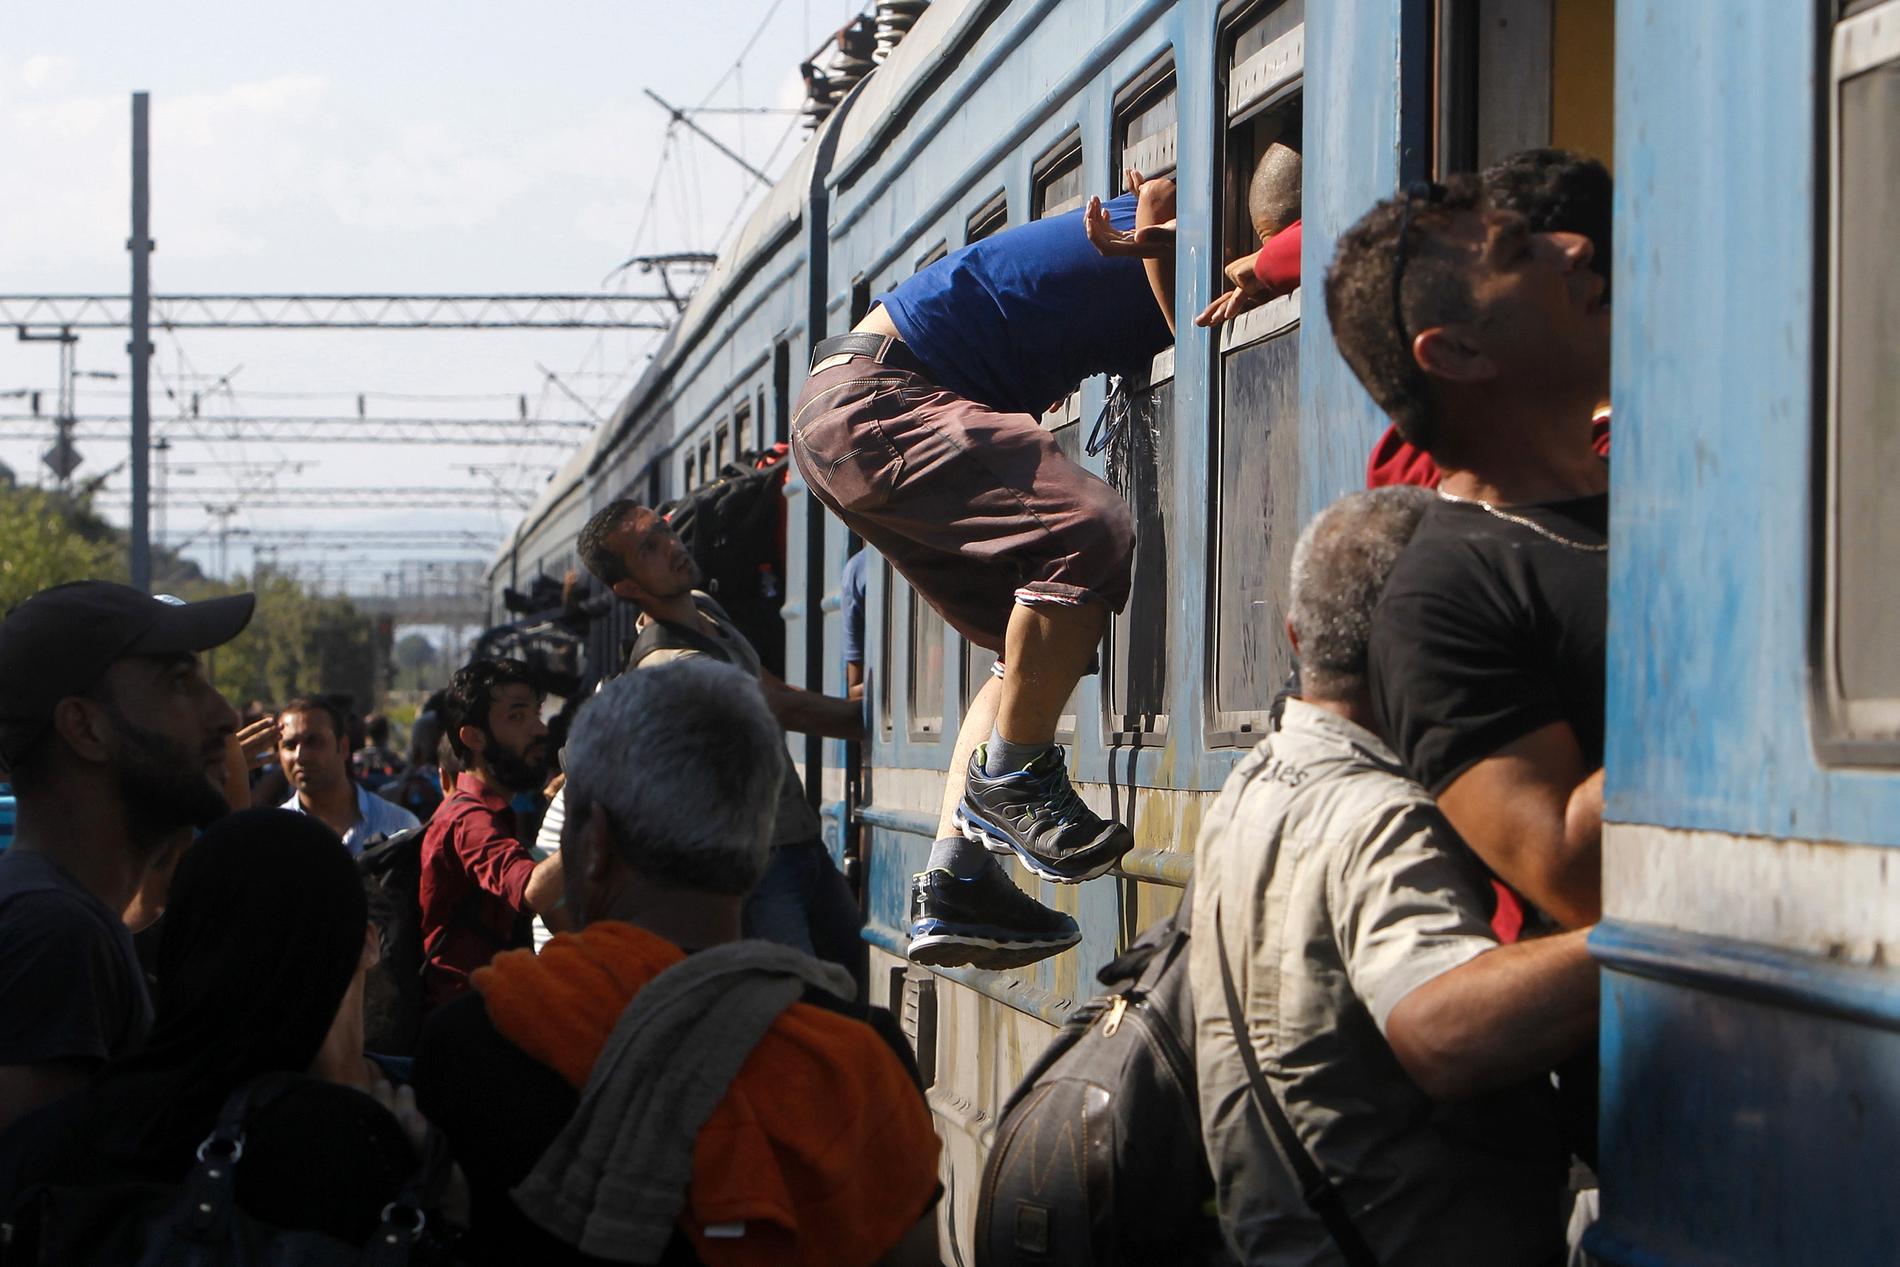 ”Jag har en känsla av att Ungern inte kommer kunna klara sig utan hjälp utifrån”, säger en internationell hjälparbetare.